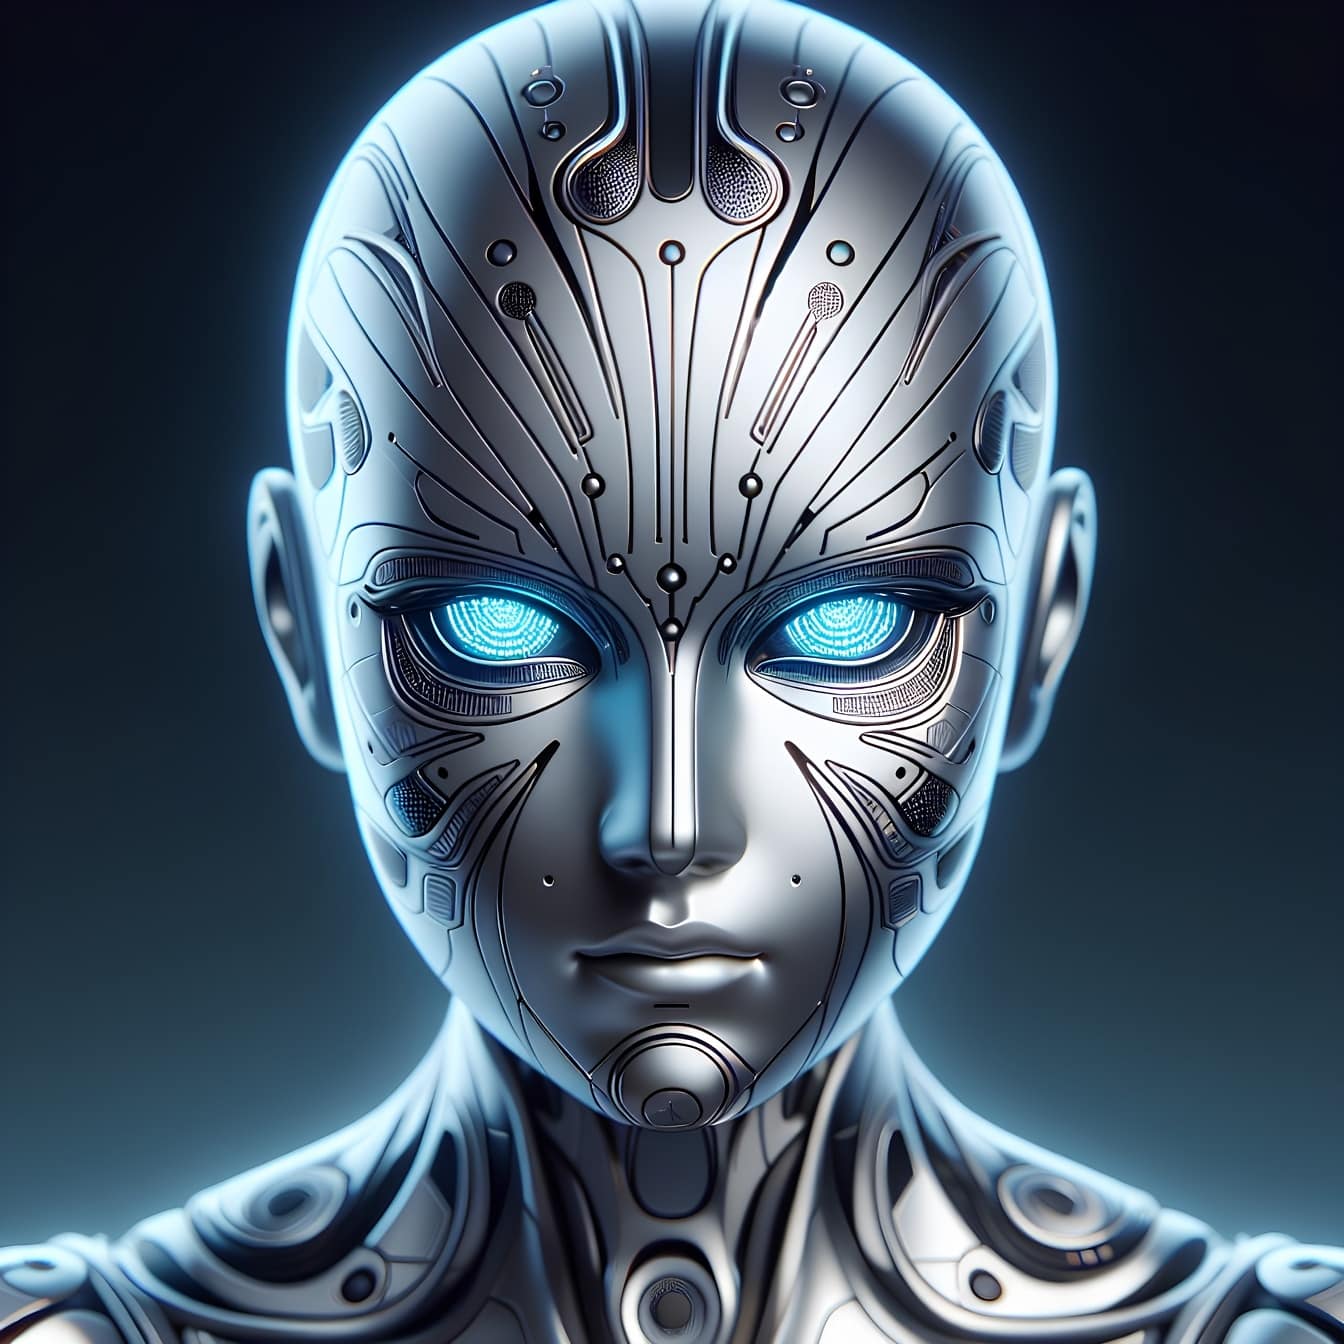 Đầu của một robot android, một người ngoài hành tinh cyborg với trí tuệ nhân tạo với đôi mắt phát sáng